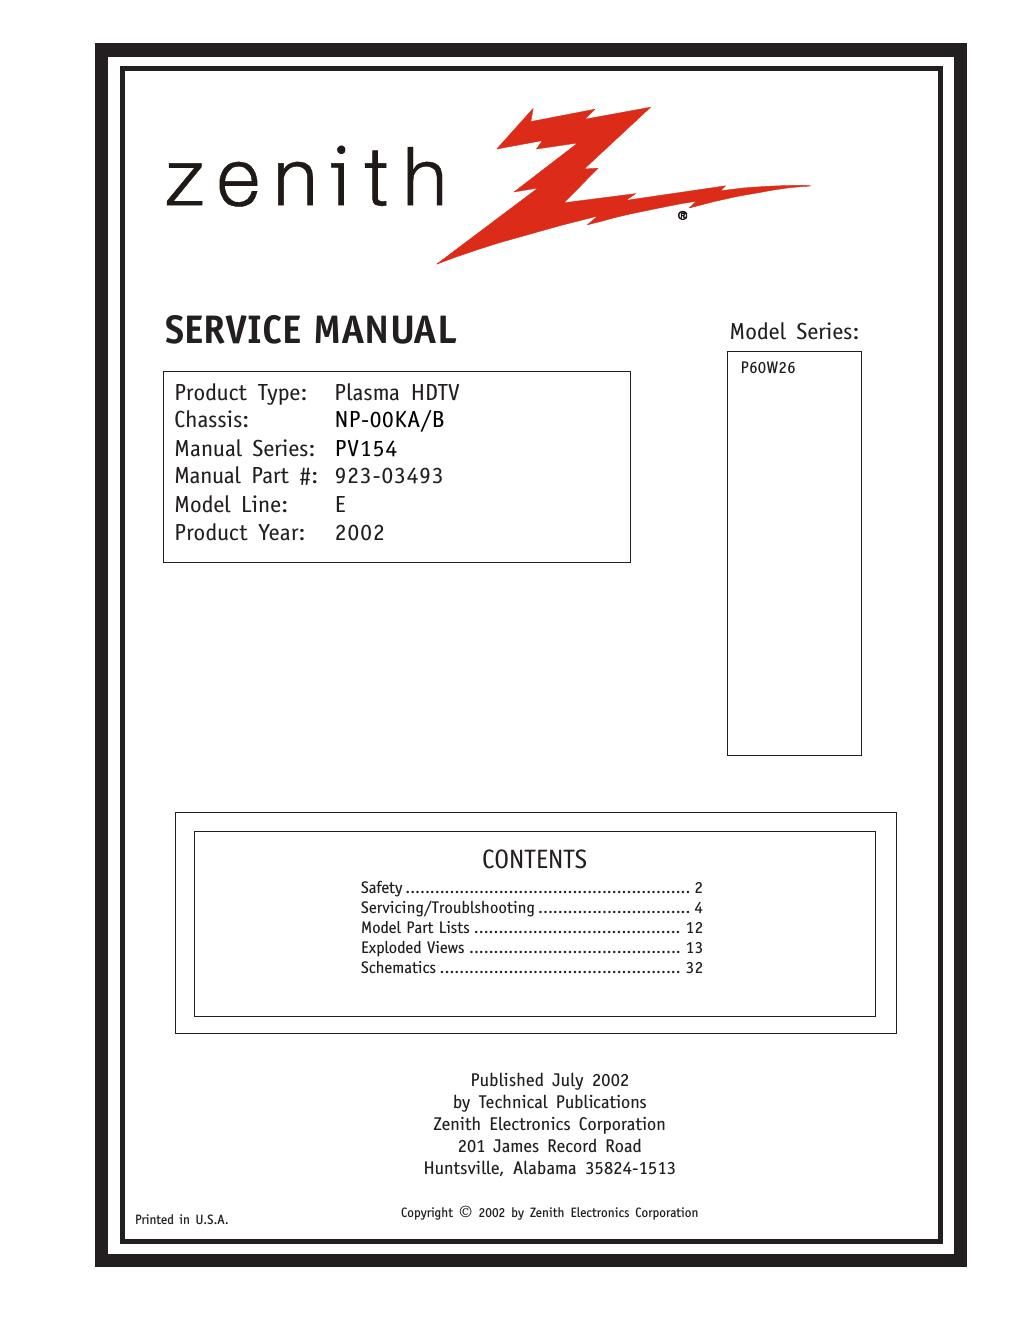 zenith p 60w26 np 00ka service manual